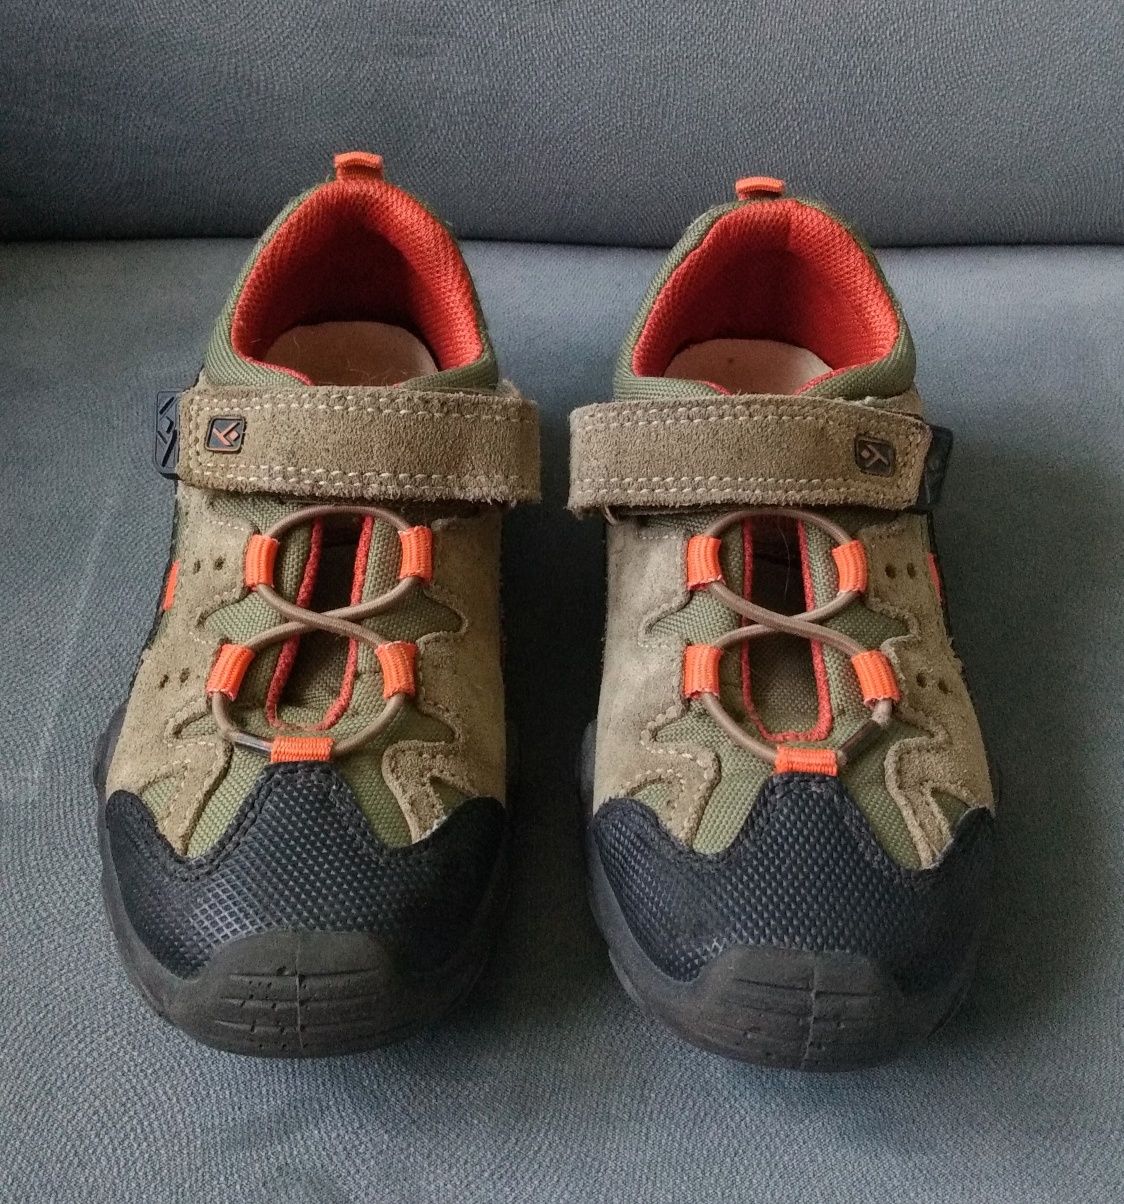 Buty dla dziecka trekkingowe HAMA Rozmiar 29 do chodzenia po górach